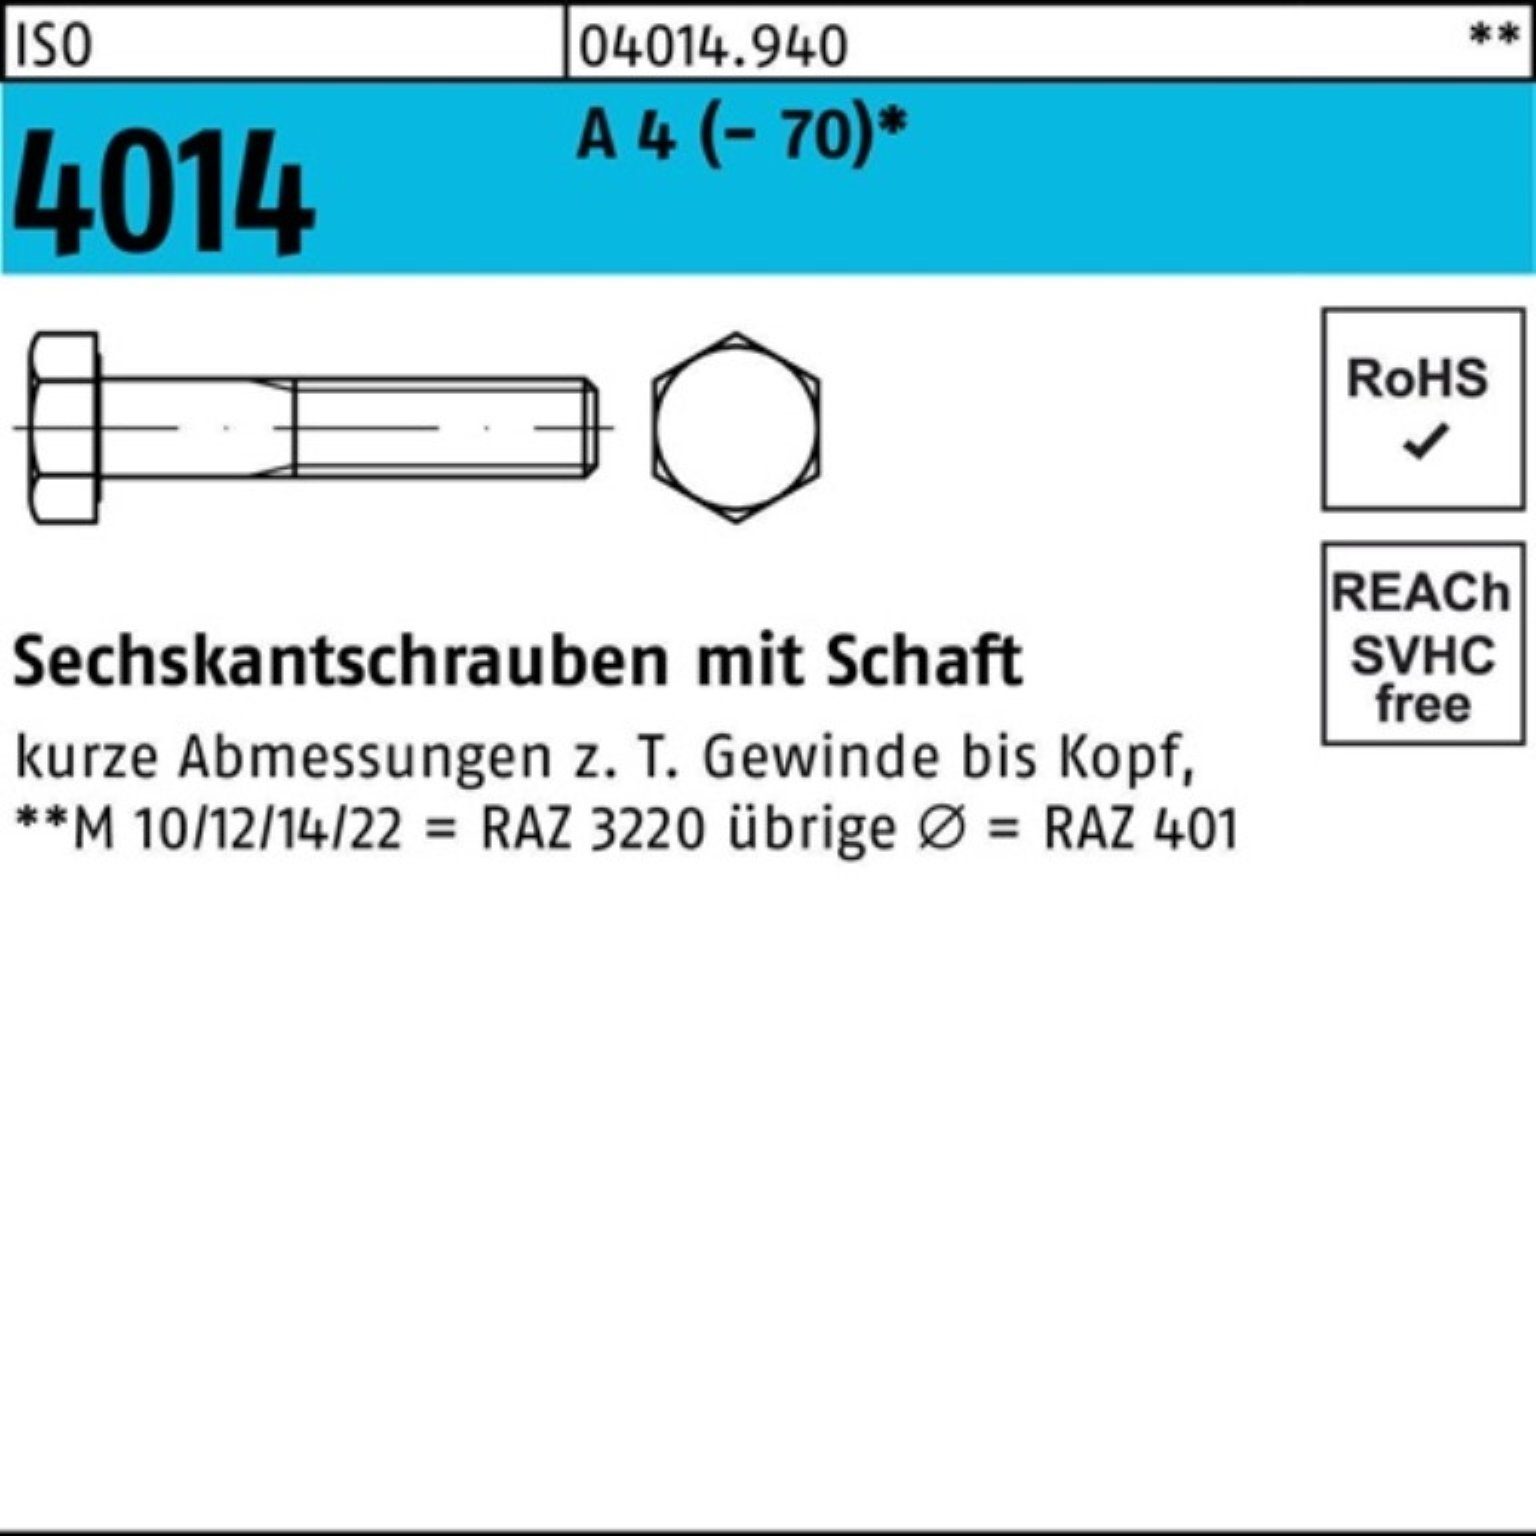 ISO 110 Bufab 4014 Sechskantschraube (70) M24x Schaft 4 A 1 Pack Sechskantschraube St 100er